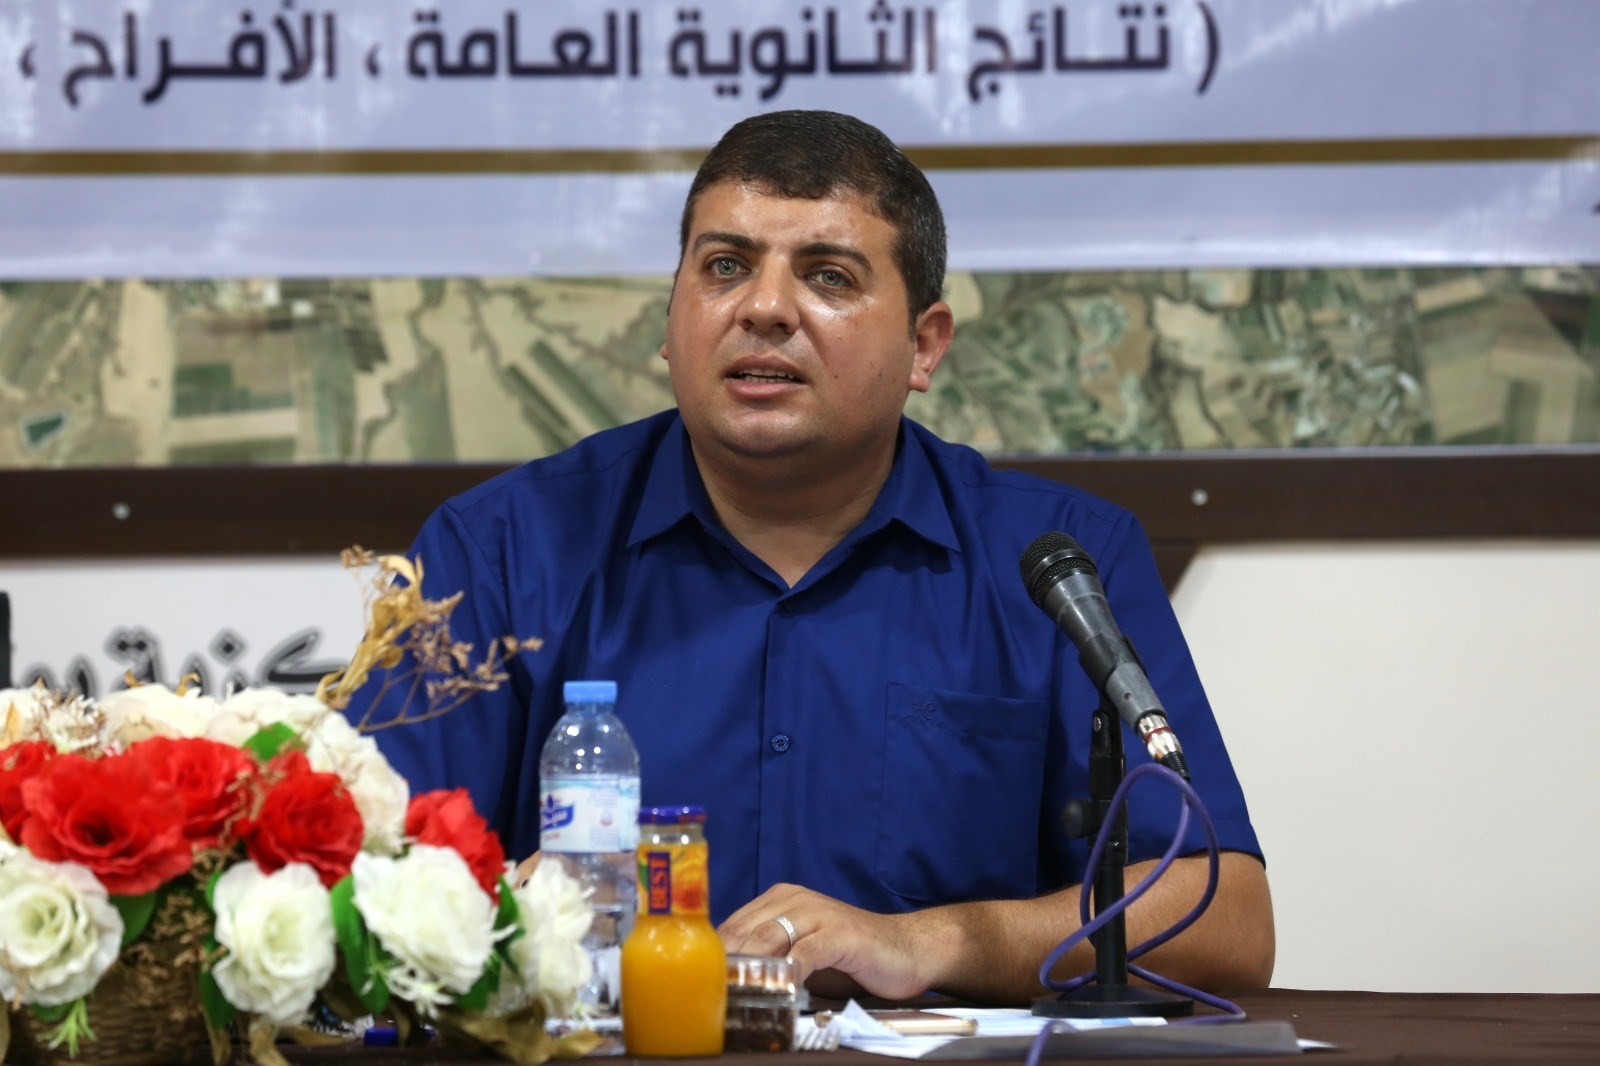 لقاء عقدته وحدة التنسيق الفصائلي بوزارة الداخلية مع منسقي الفصائل والحالات العسكرية بقطاع غزة 0.jpeg